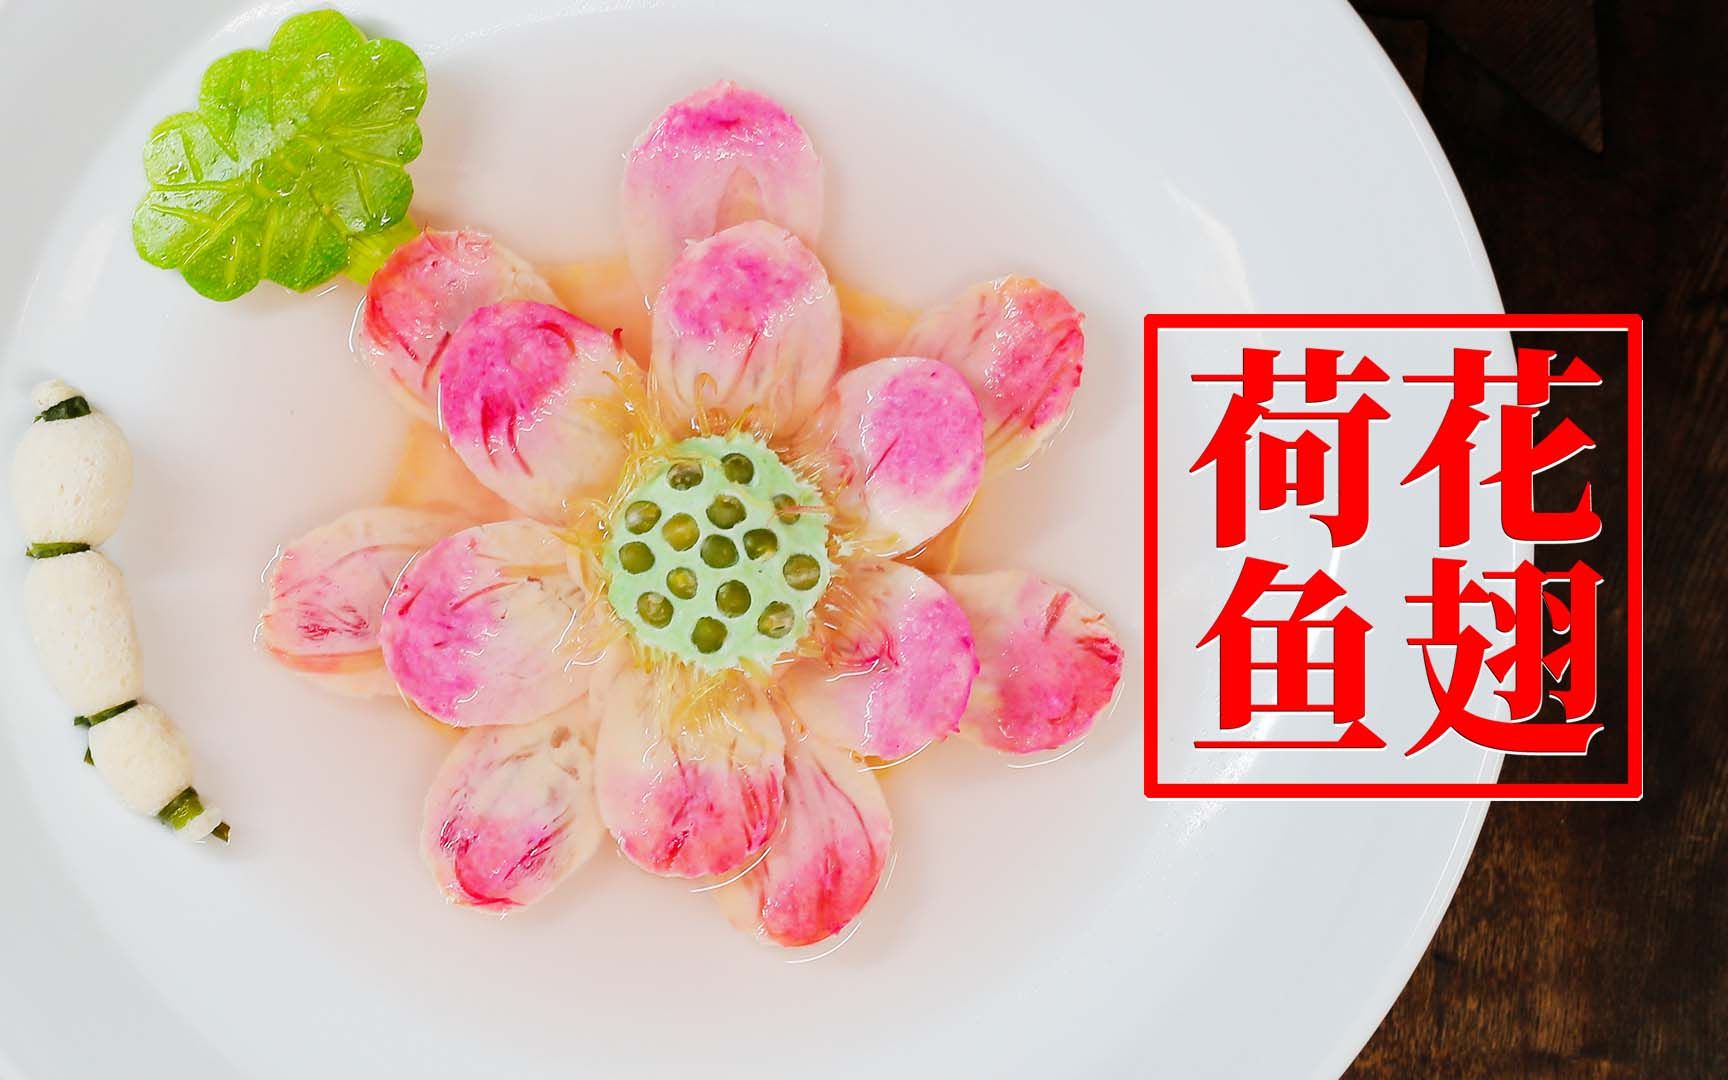 【荷花鱼翅】1983年中国首届国家烹饪大赛中师爷颜景祥的表演菜，由师父陈宗明重现。